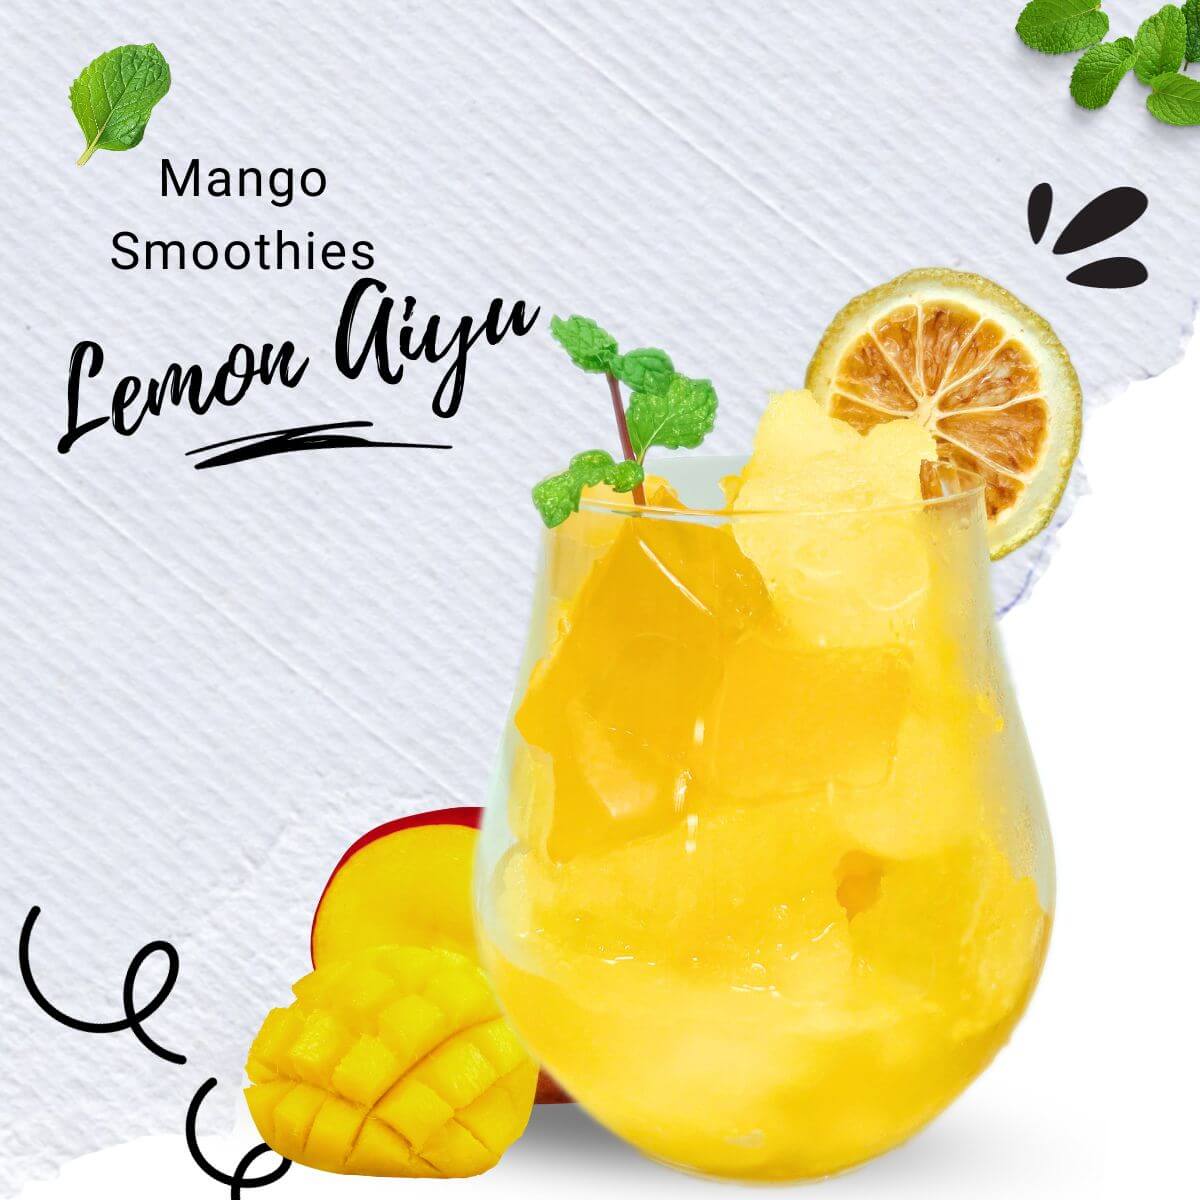 عصير مانجو آيو